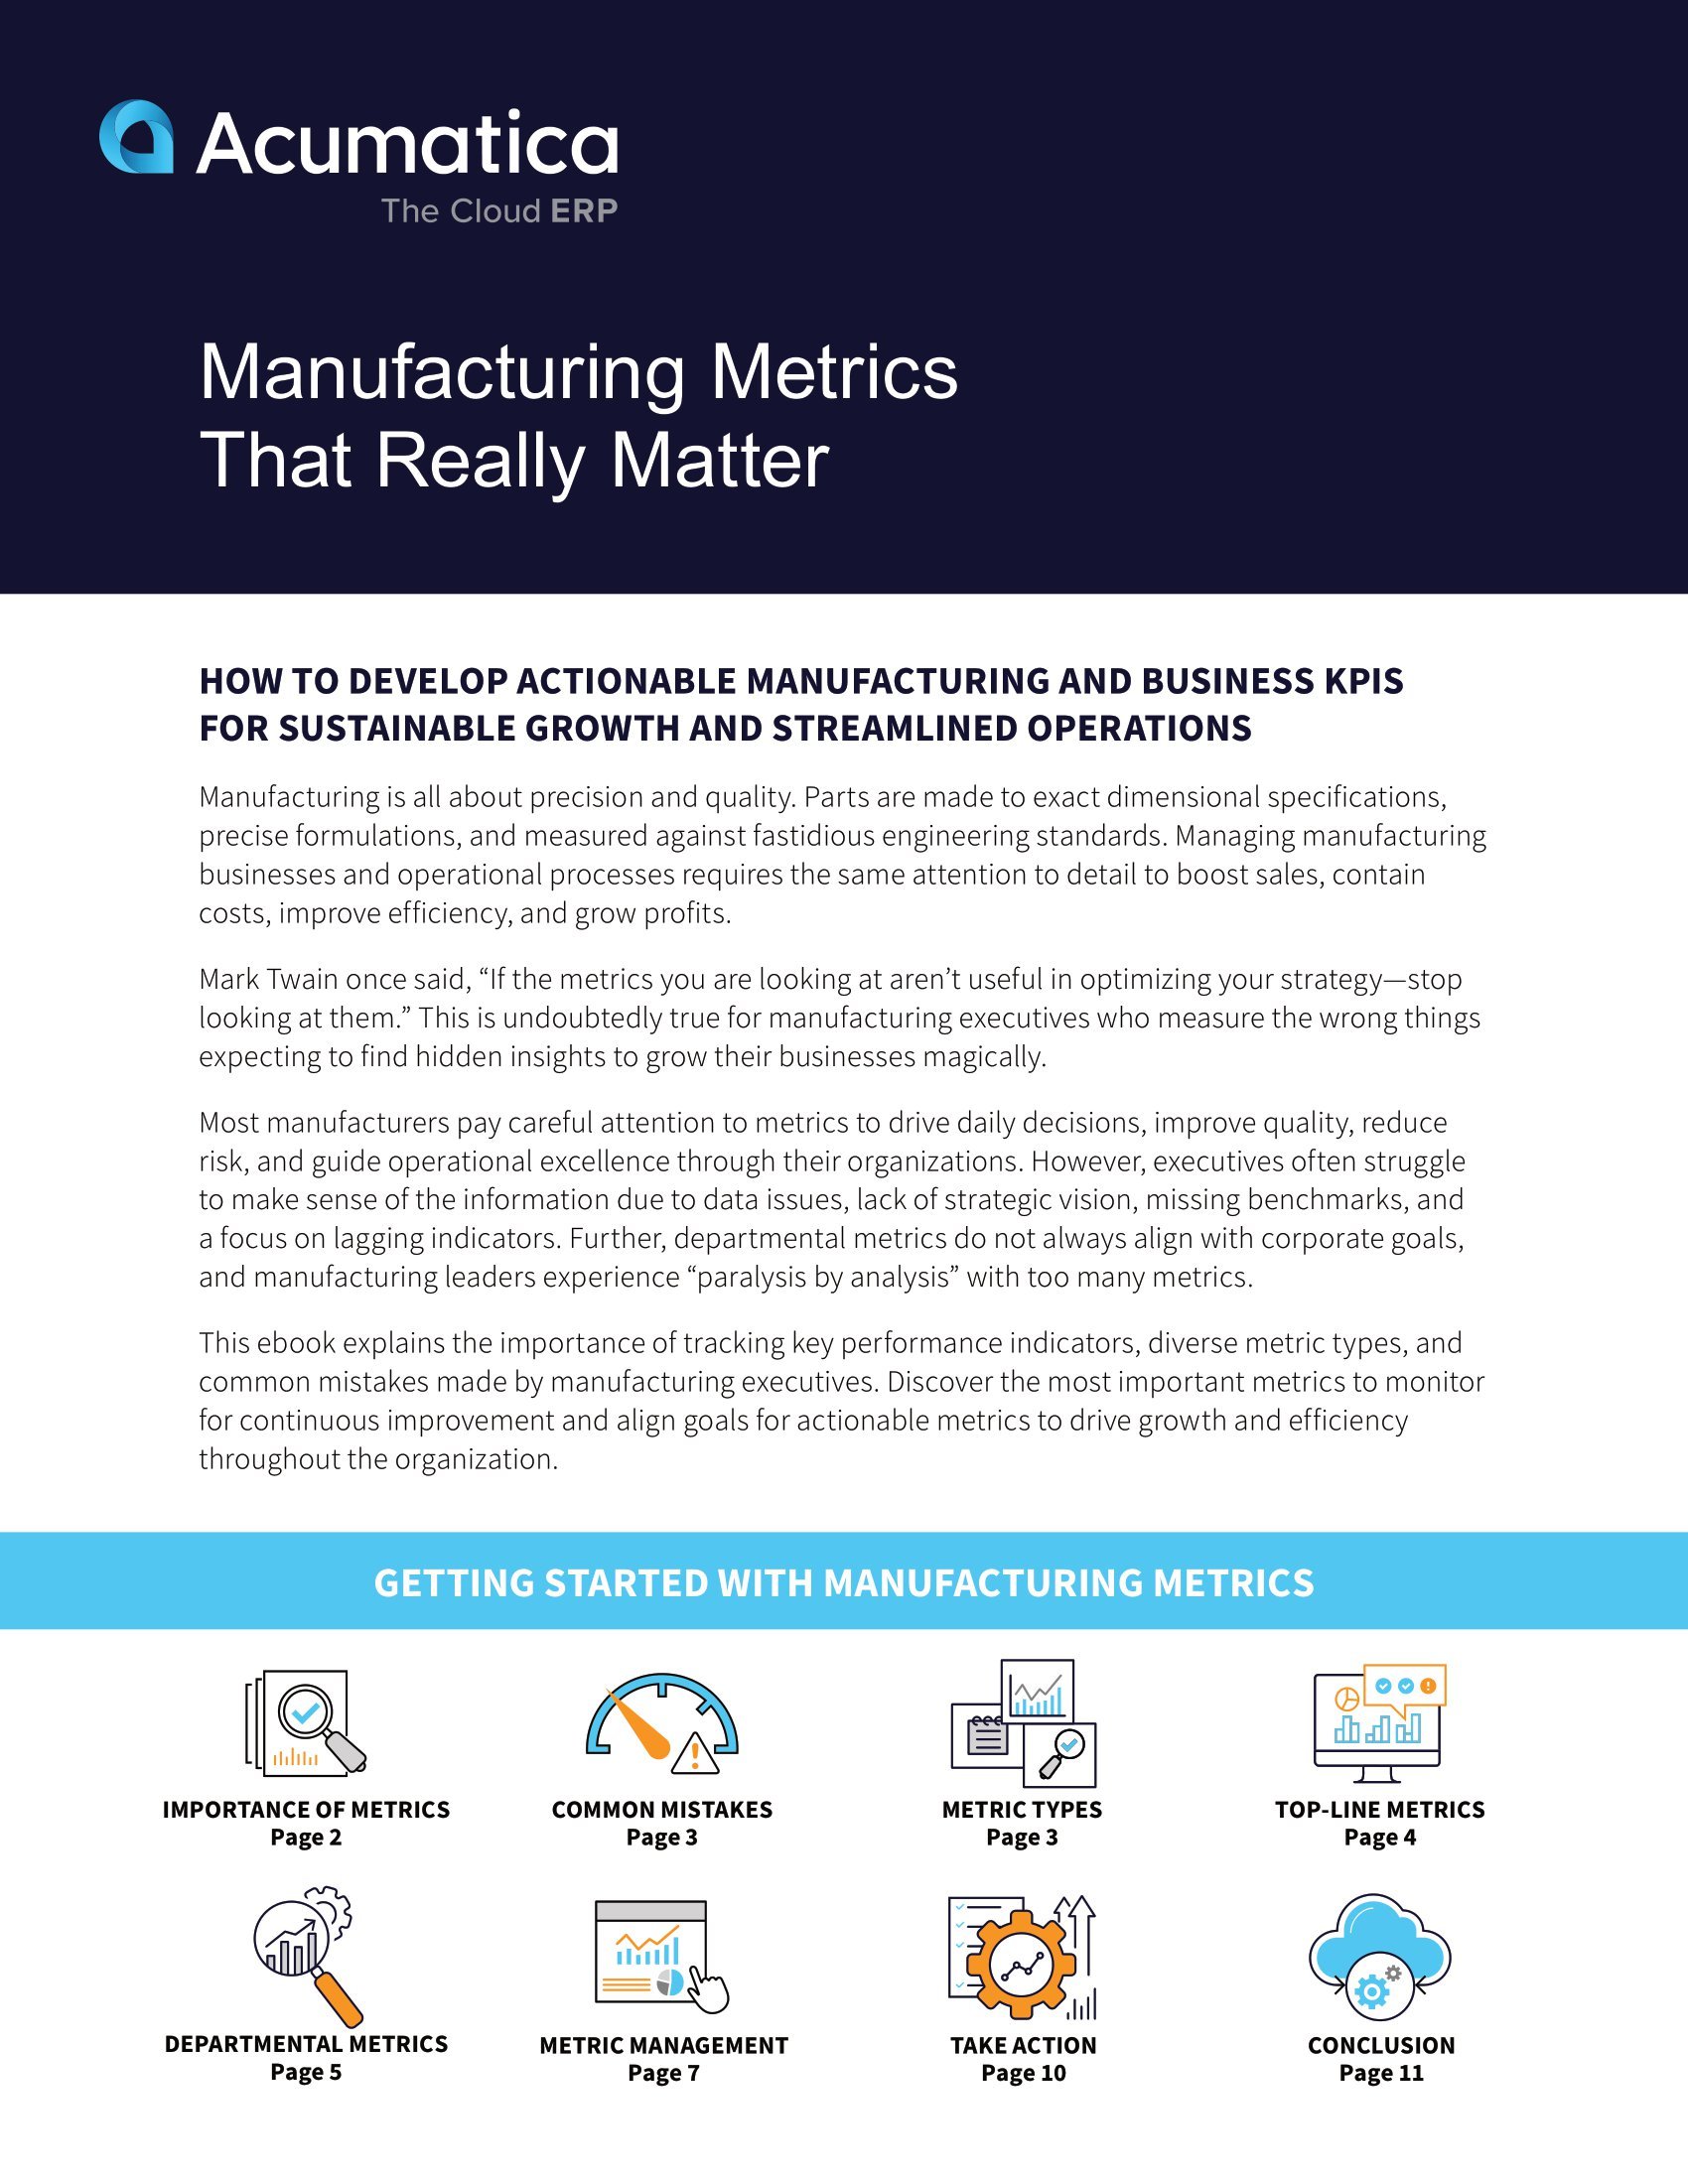 Las métricas de fabricación adecuadas para la eficiencia y el crecimiento